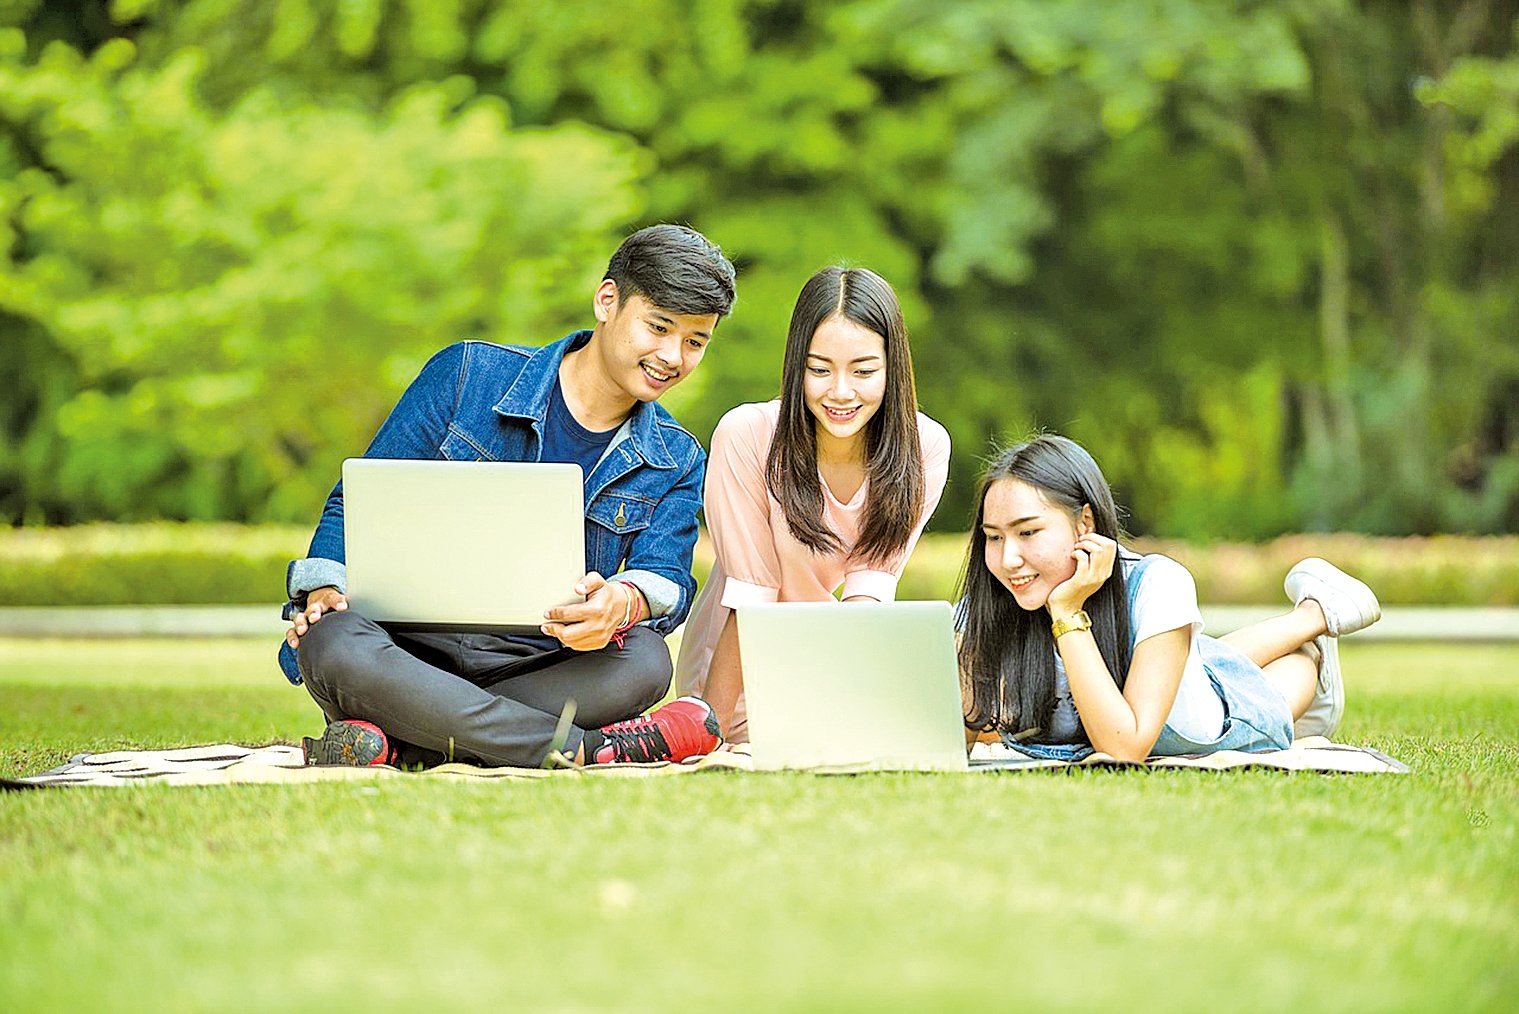 Trường Đại học Quốc gia Đài Loan triển khai dự án thực tập tại các doanh nghiệp cho sinh viên quốc tế trong kỳ nghỉ hè. (Nguồn ảnh: kho ảnh Pixabay)